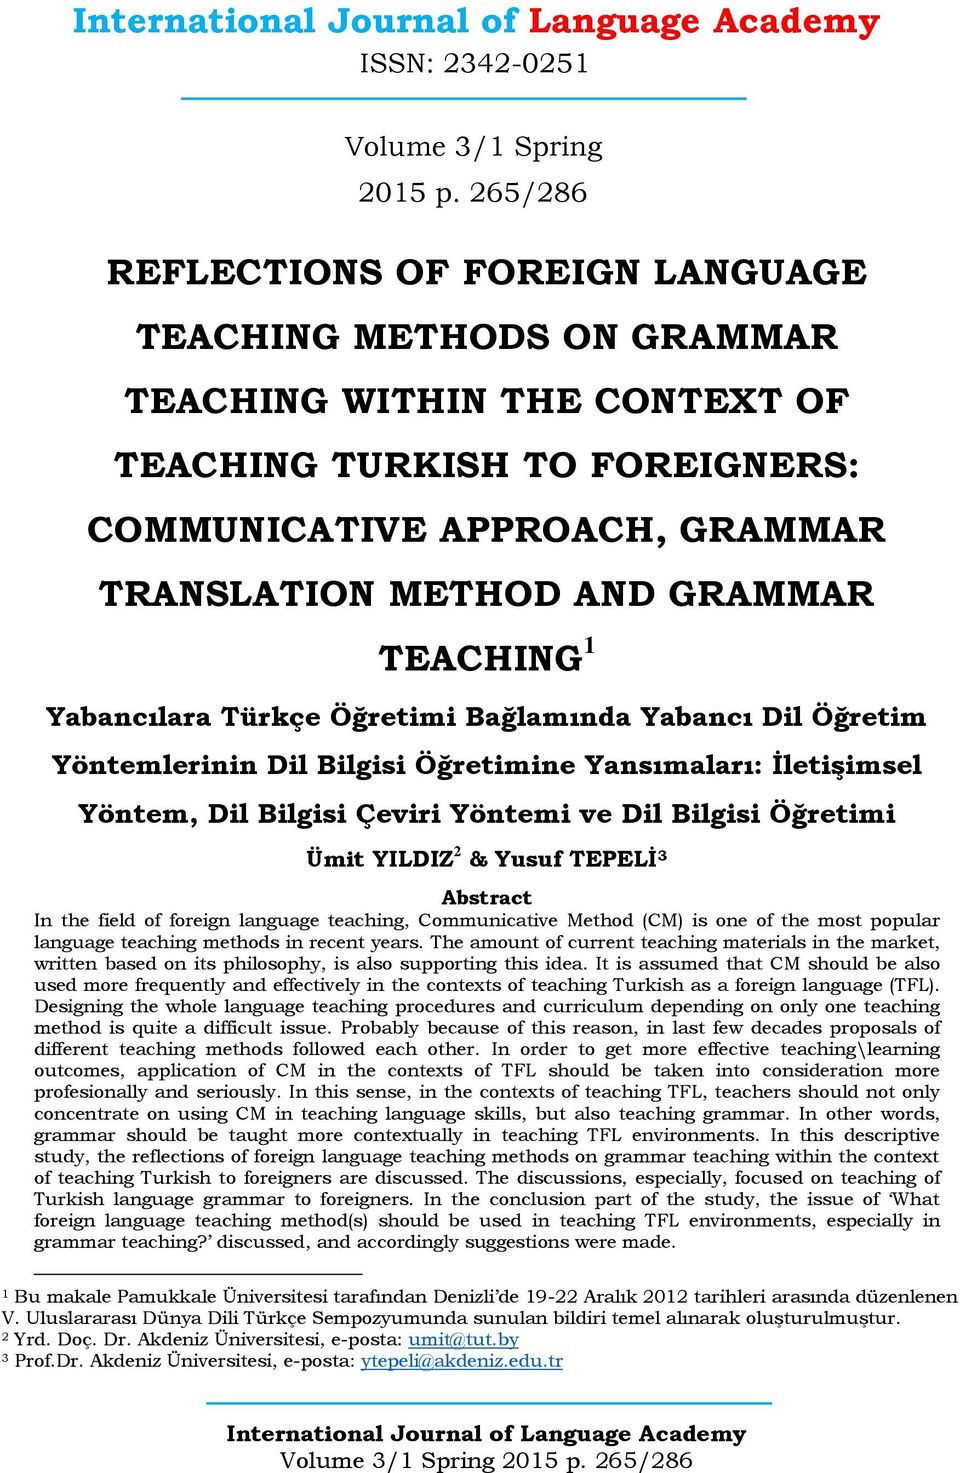 TEACHING 1 Yabancılara Türkçe Öğretimi Bağlamında Yabancı Dil Öğretim Yöntemlerinin Dil Bilgisi Öğretimine Yansımaları: İletişimsel Yöntem, Dil Bilgisi Çeviri Yöntemi ve Dil Bilgisi Öğretimi Ümit